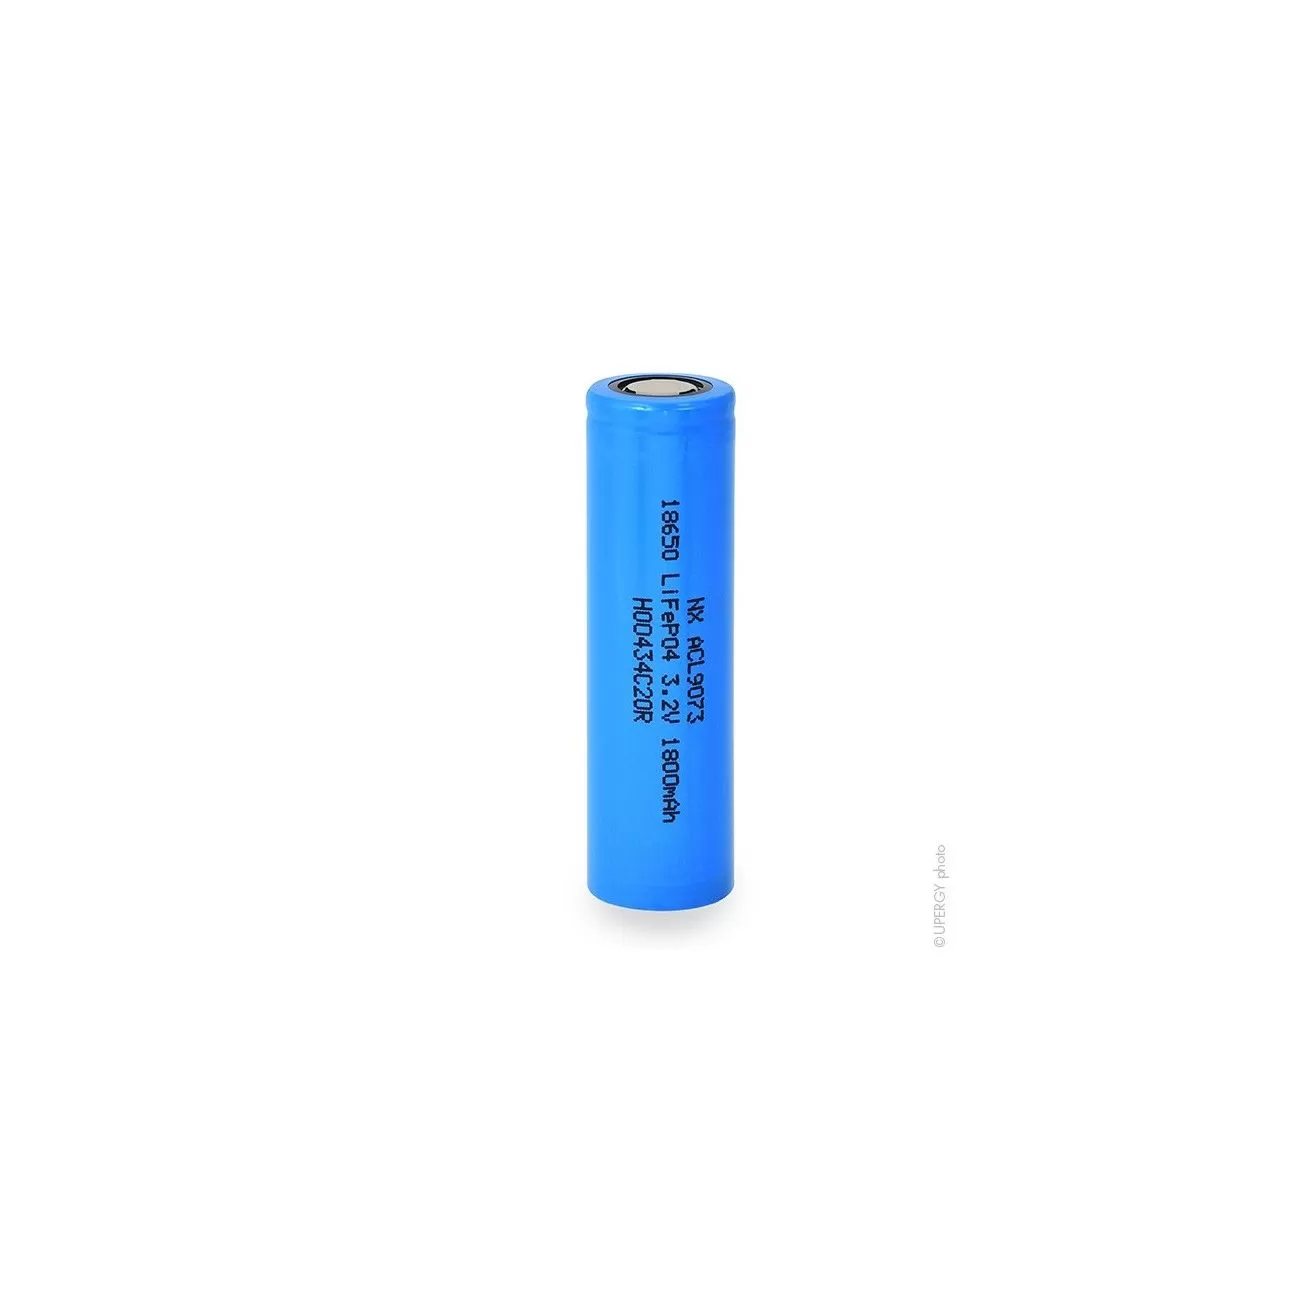 Batterie lithium fer phosphate UN38.3 (230.4Wh) 12V 18Ah M6-M